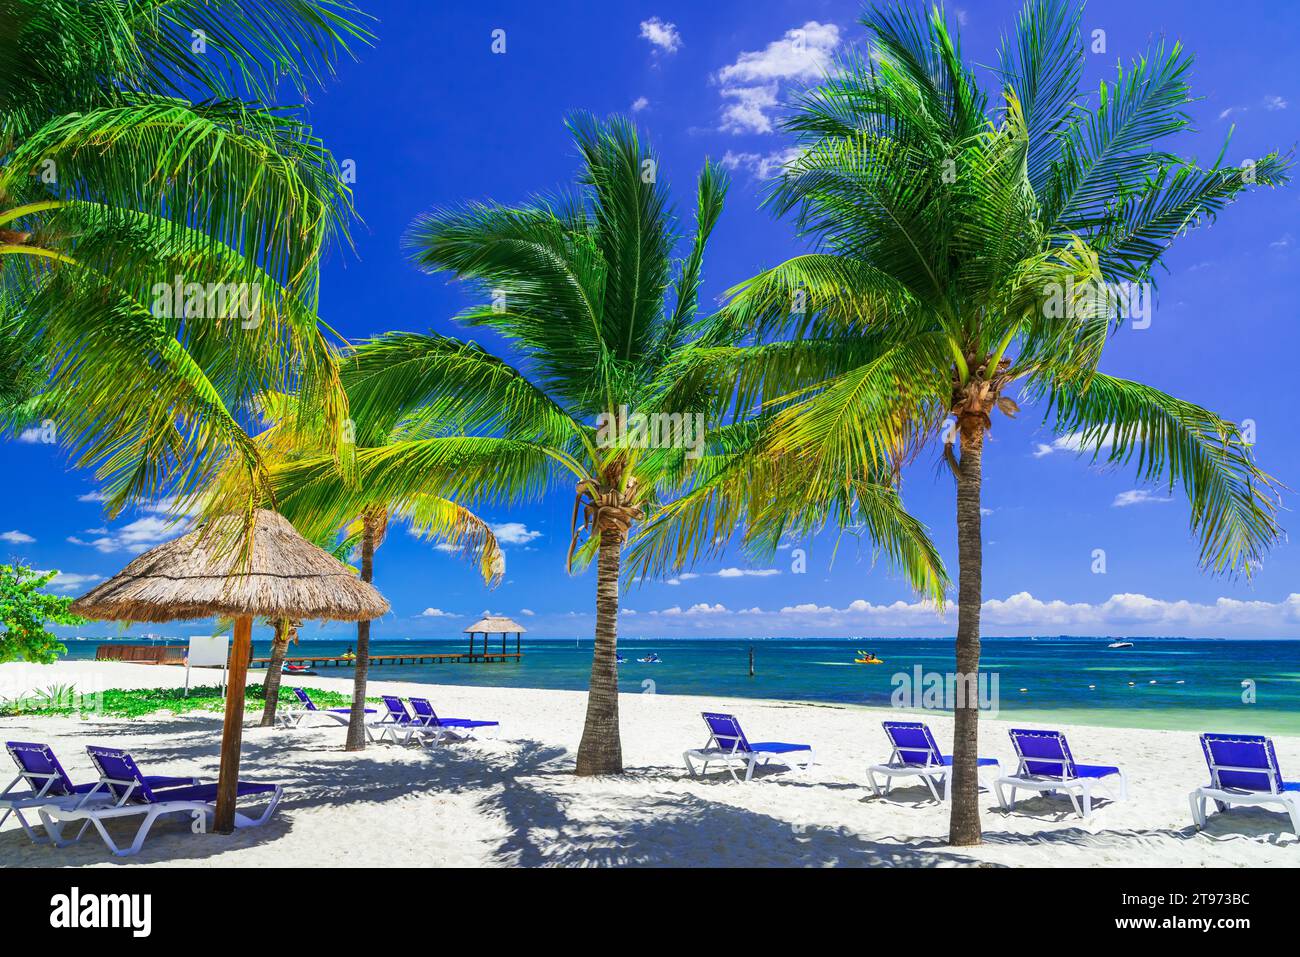 Cancun, Messico. Paesaggio tropicale con palme da cocco sulla spiaggia del Mar dei Caraibi, nella penisola dello Yucatan. Foto Stock